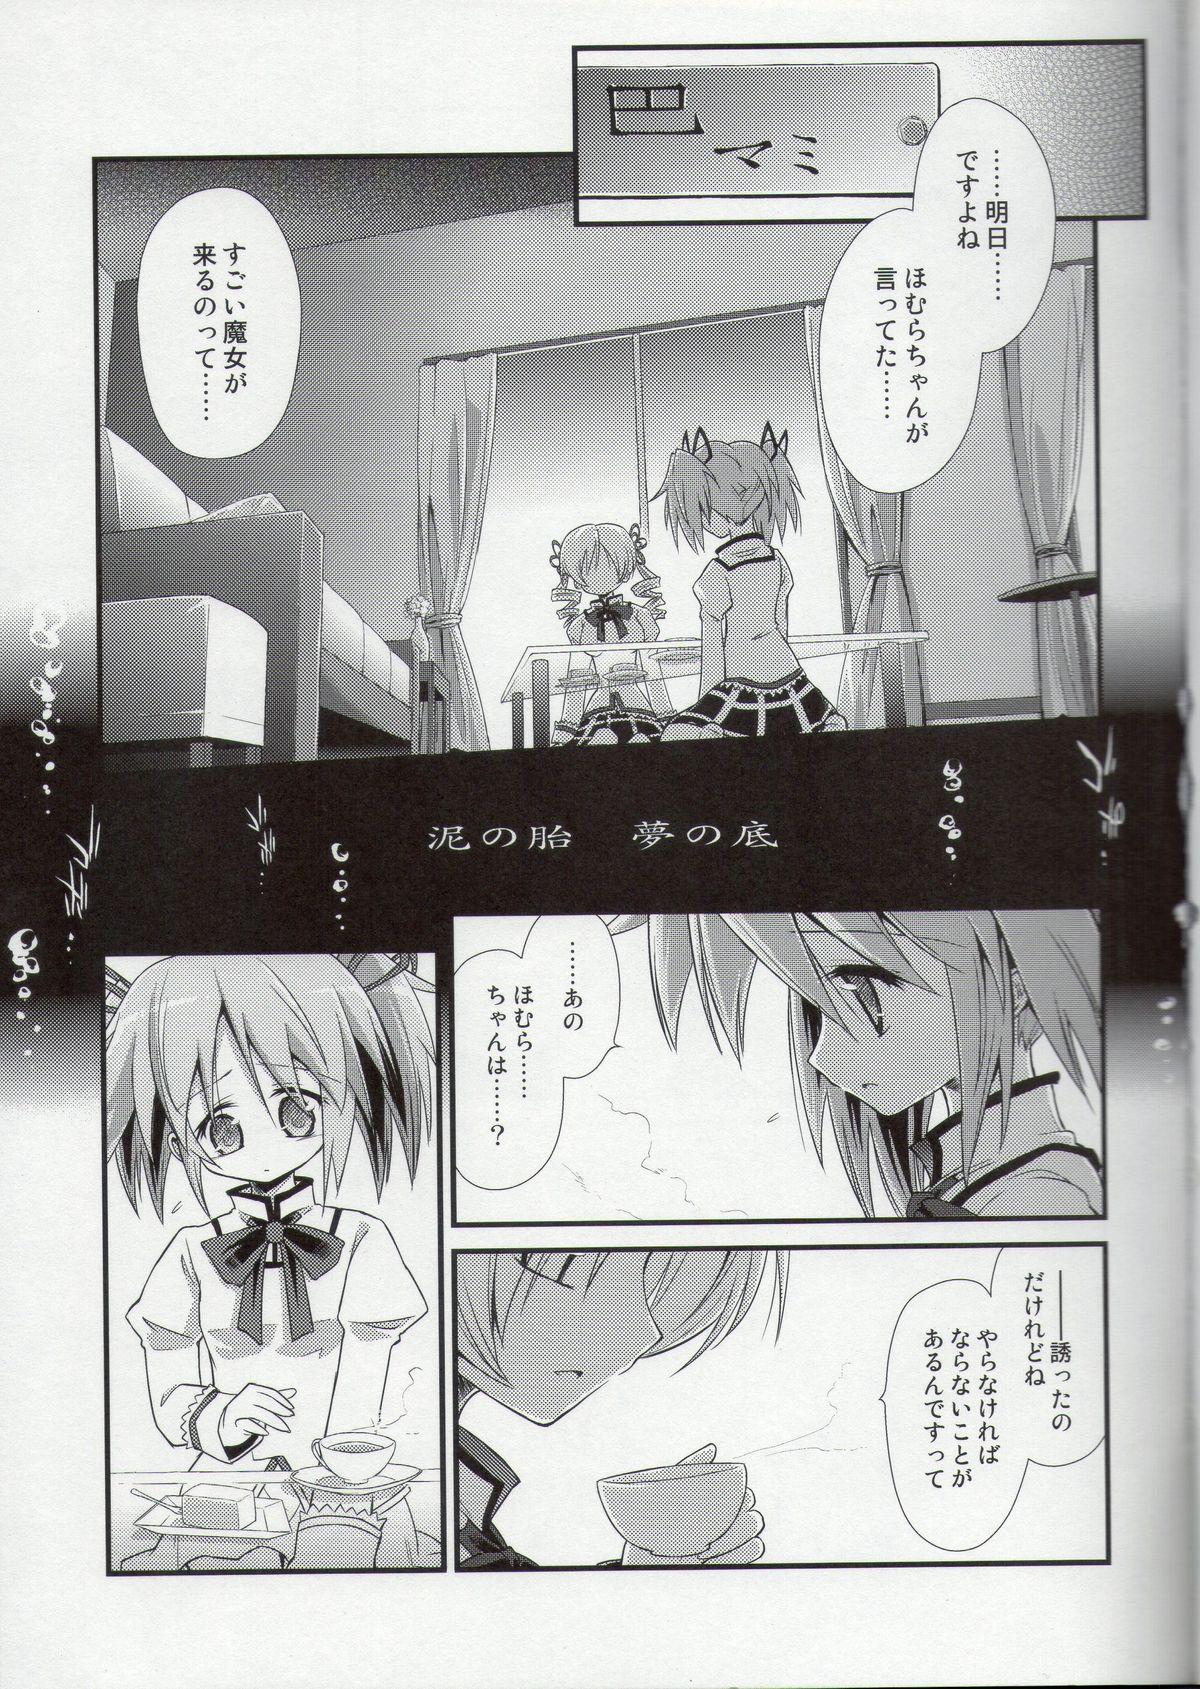 Teasing Doro no Naka Yume no Soko - Puella magi madoka magica Transex - Page 3